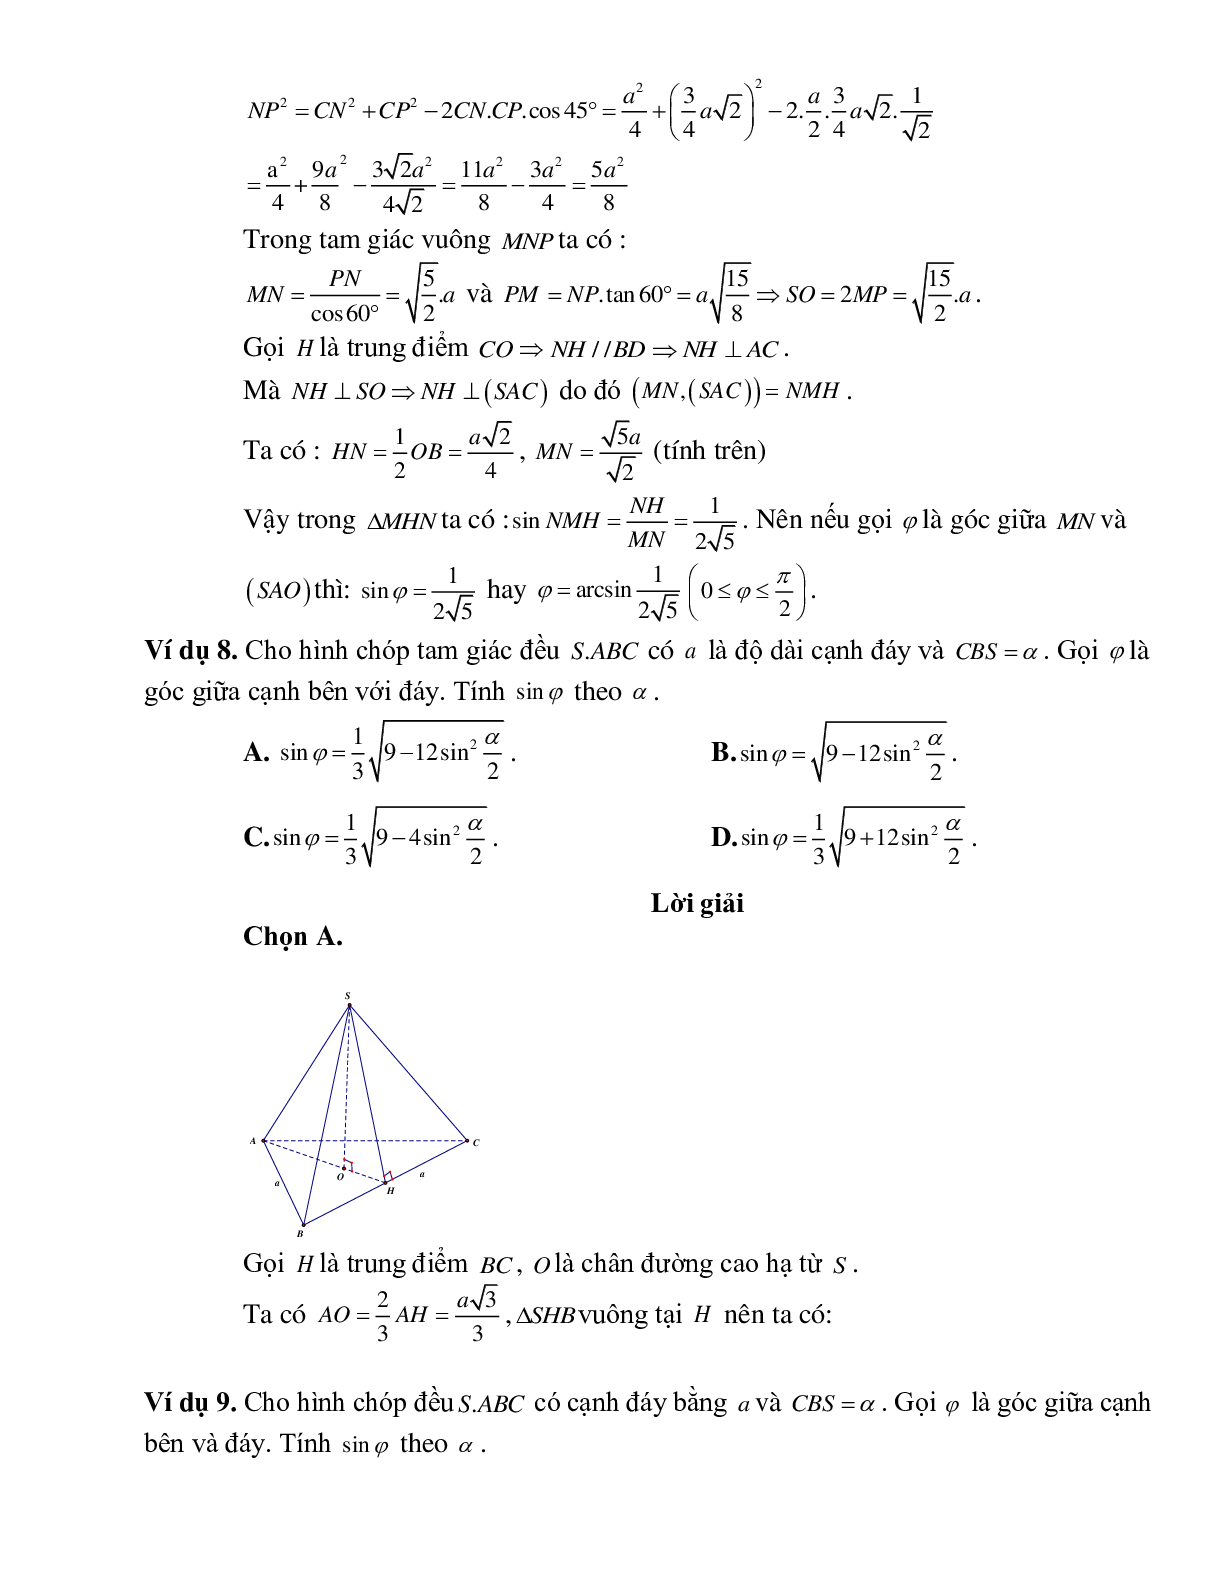 Bài tập Toán hình 11 Bài 2 có đáp án: Hai đường thẳng vuông góc (trang 7)